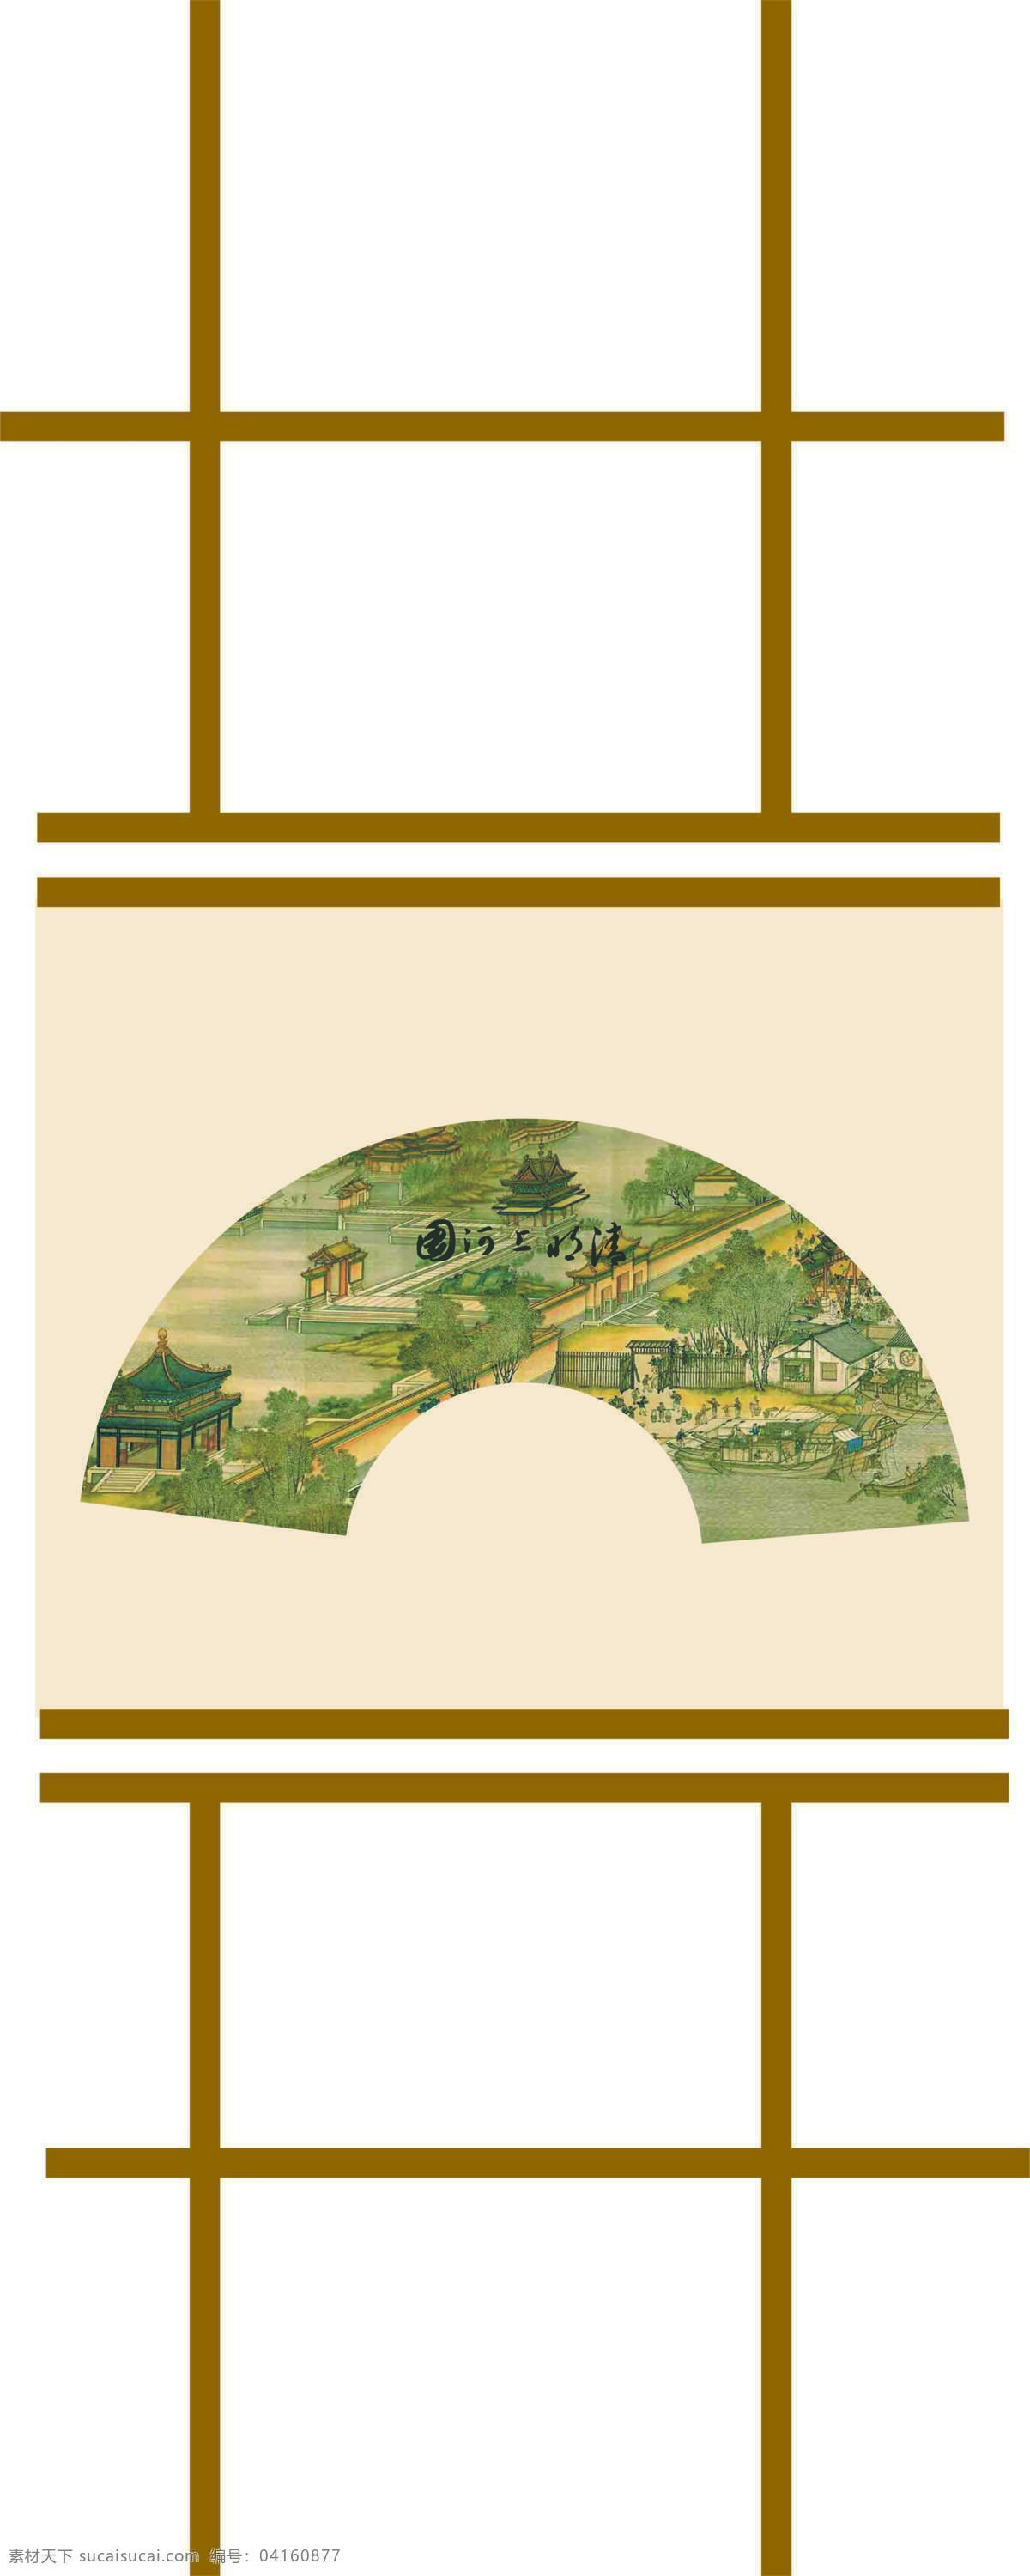 中国 风 底纹边框 绘画书法 扇形图 扇子 文化艺术 线条 移门图 中国风 中国纹理 中国元素 移门图案 装饰素材